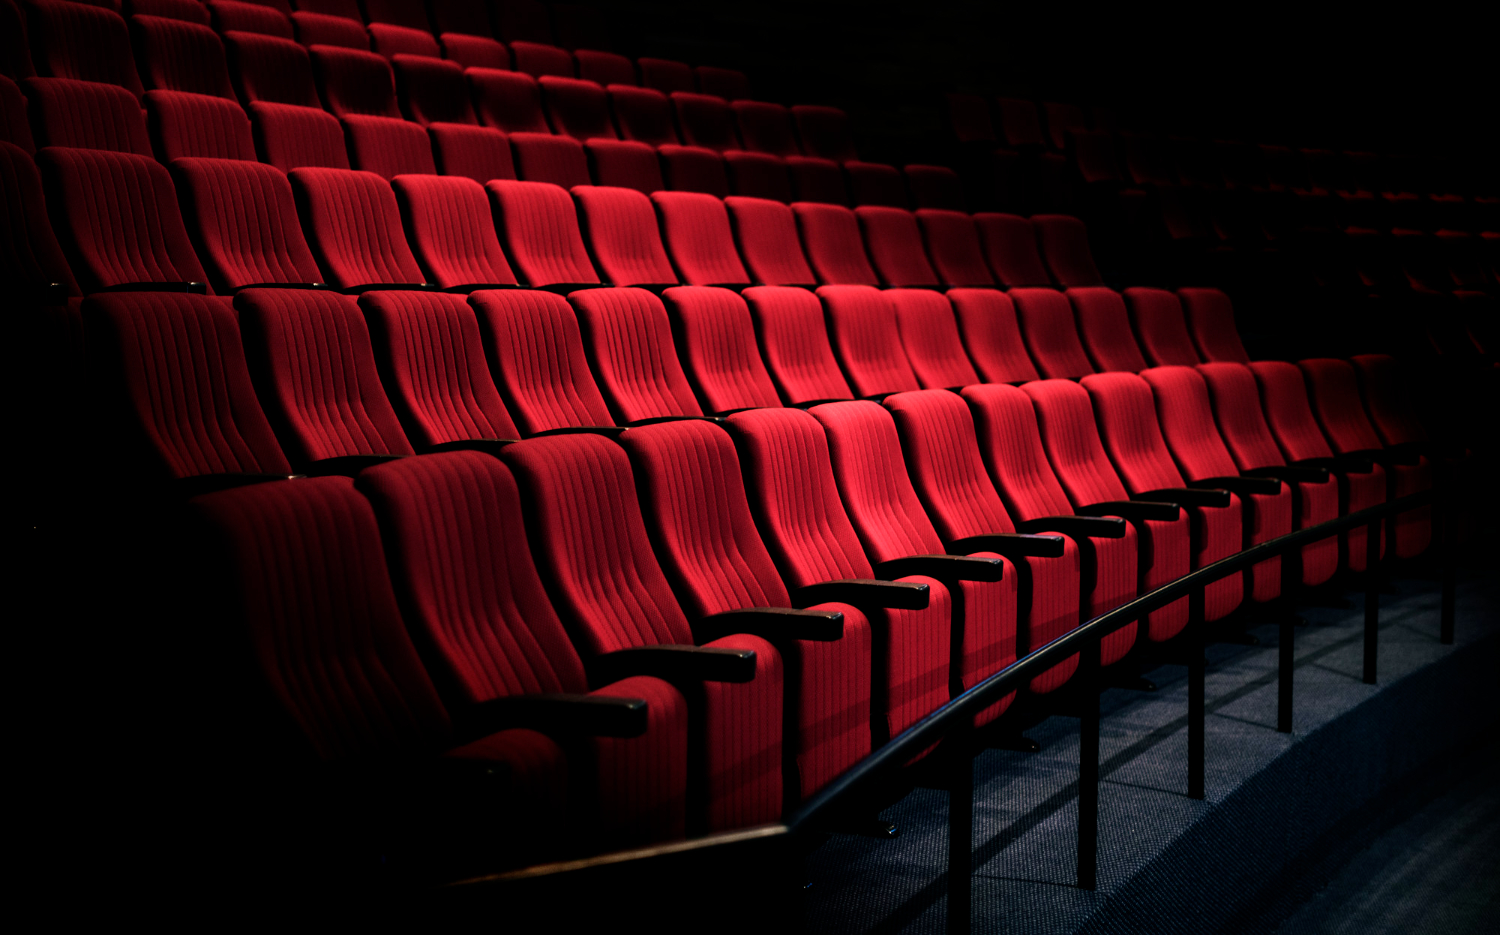 การดูหนังในโรงหนังดีอย่างไรบ้าง